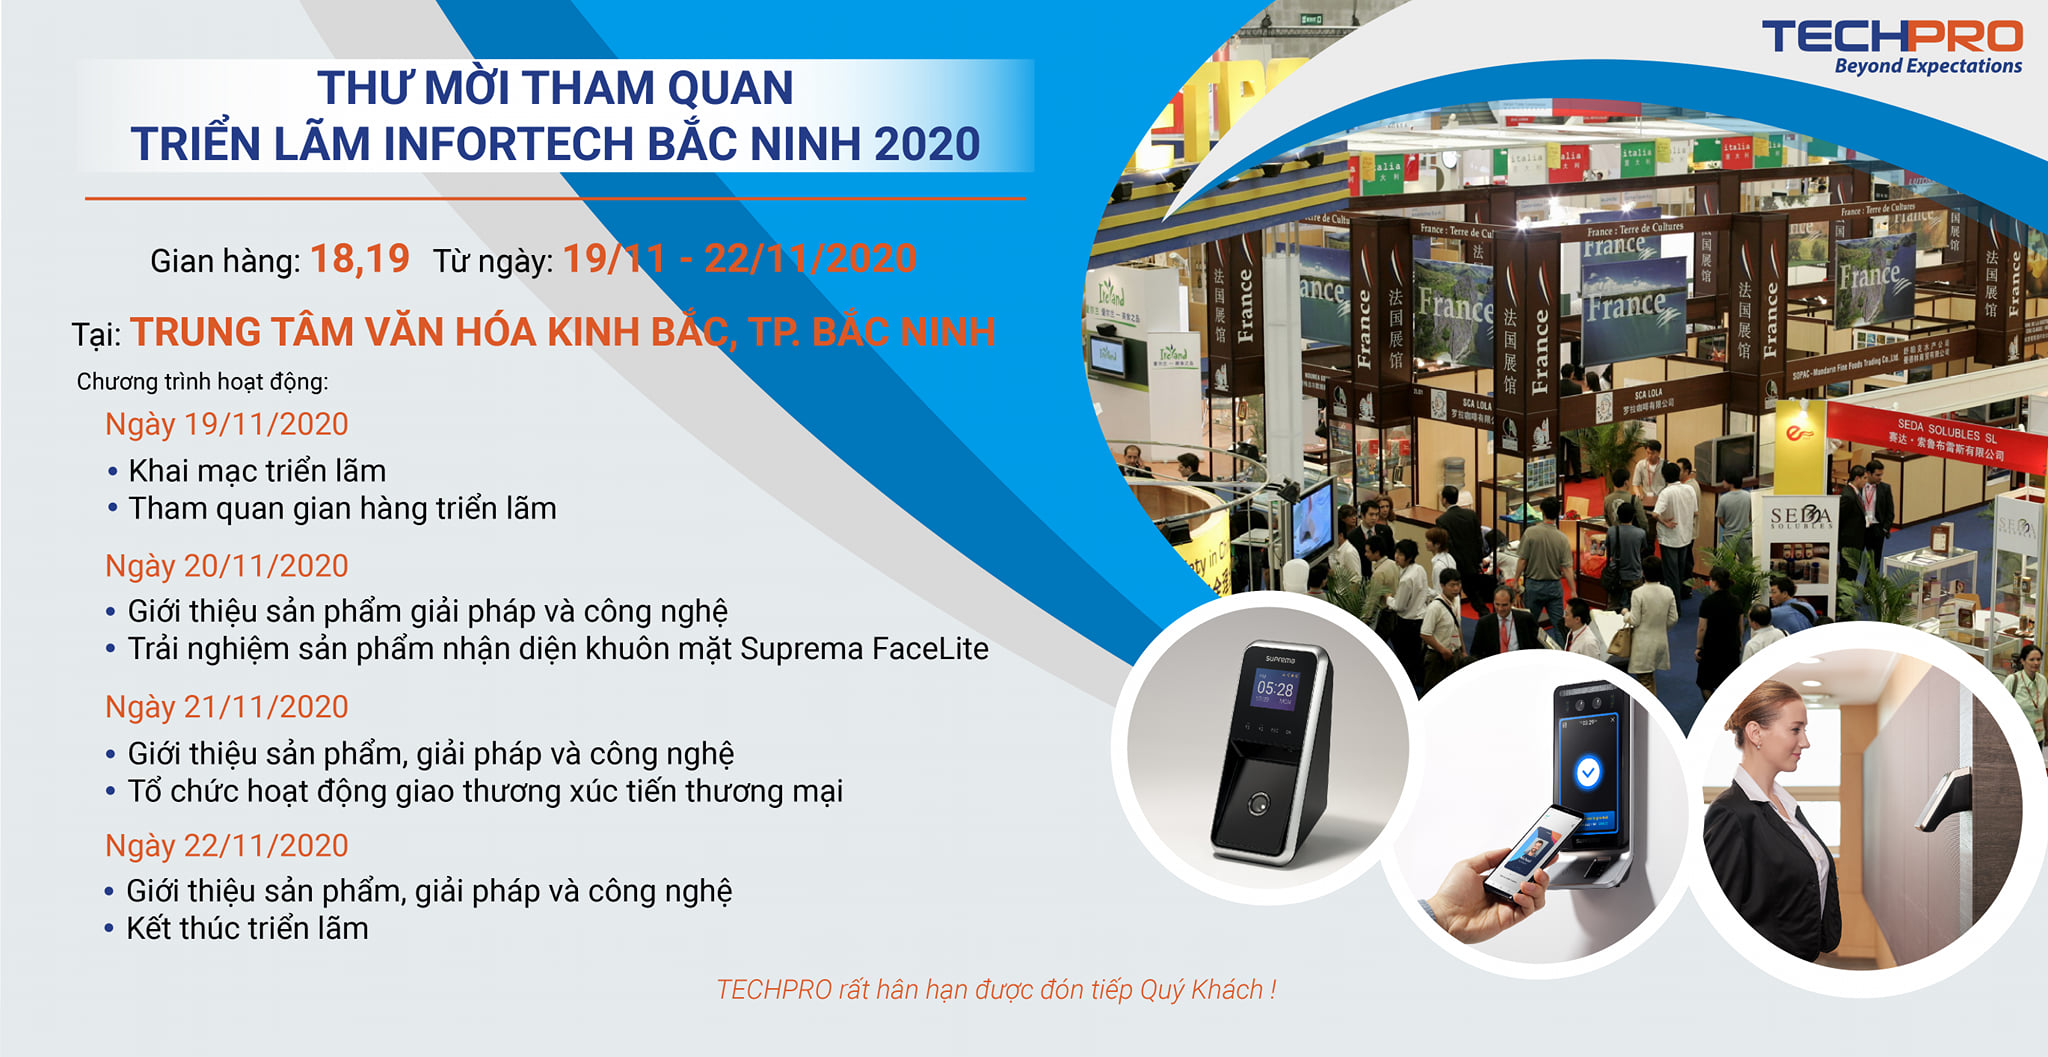 TECHPRO - Thư mời tham quan Triển lãm Công nghiệp điện tử, viễn thông, công nghệ thông tin - Infortech Bắc Ninh 2020